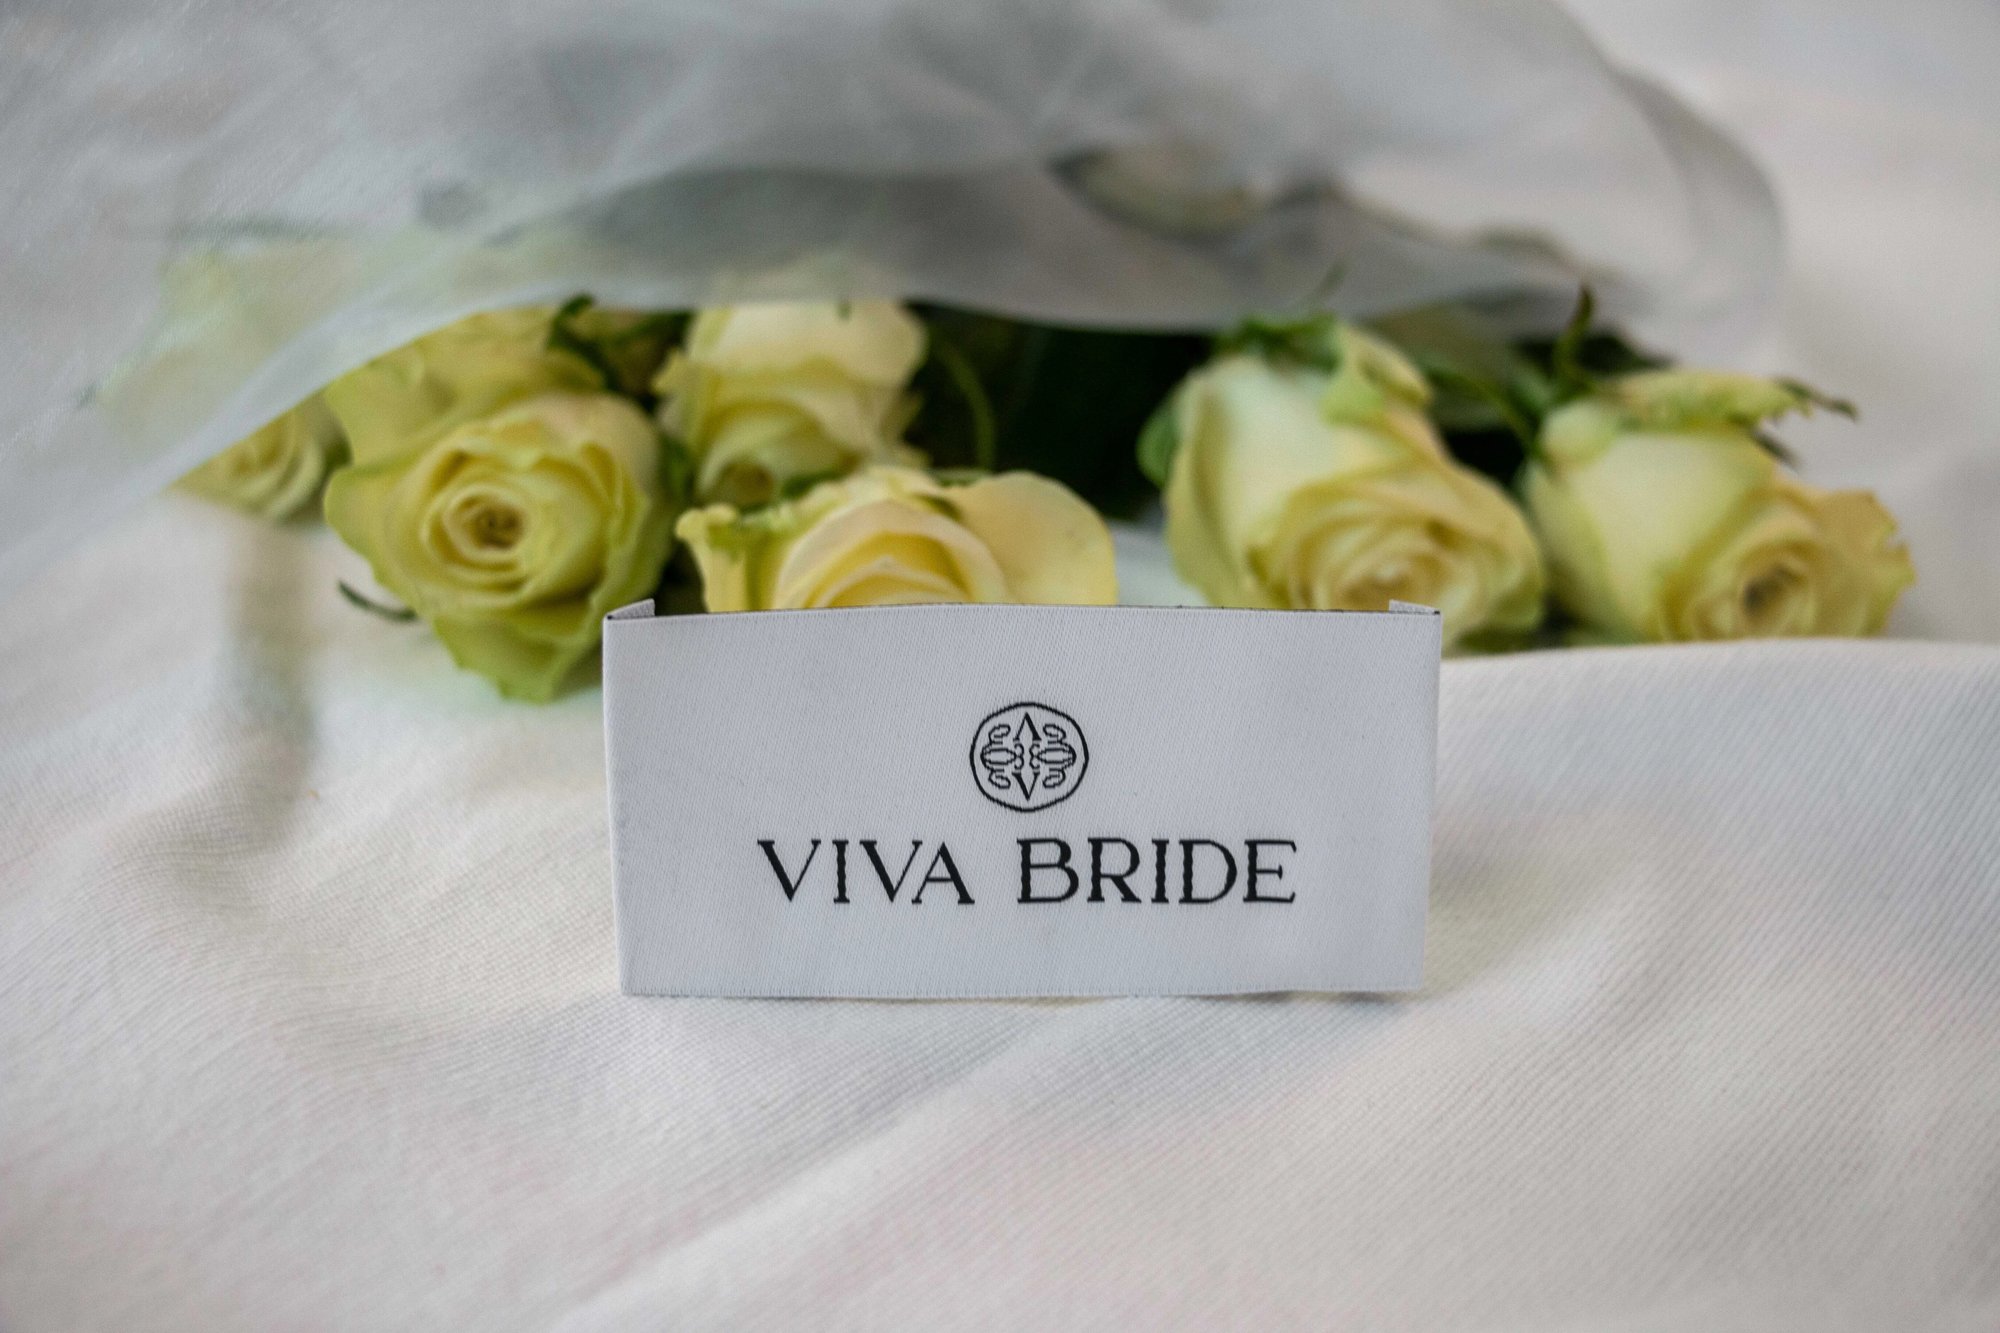 Viva Bride